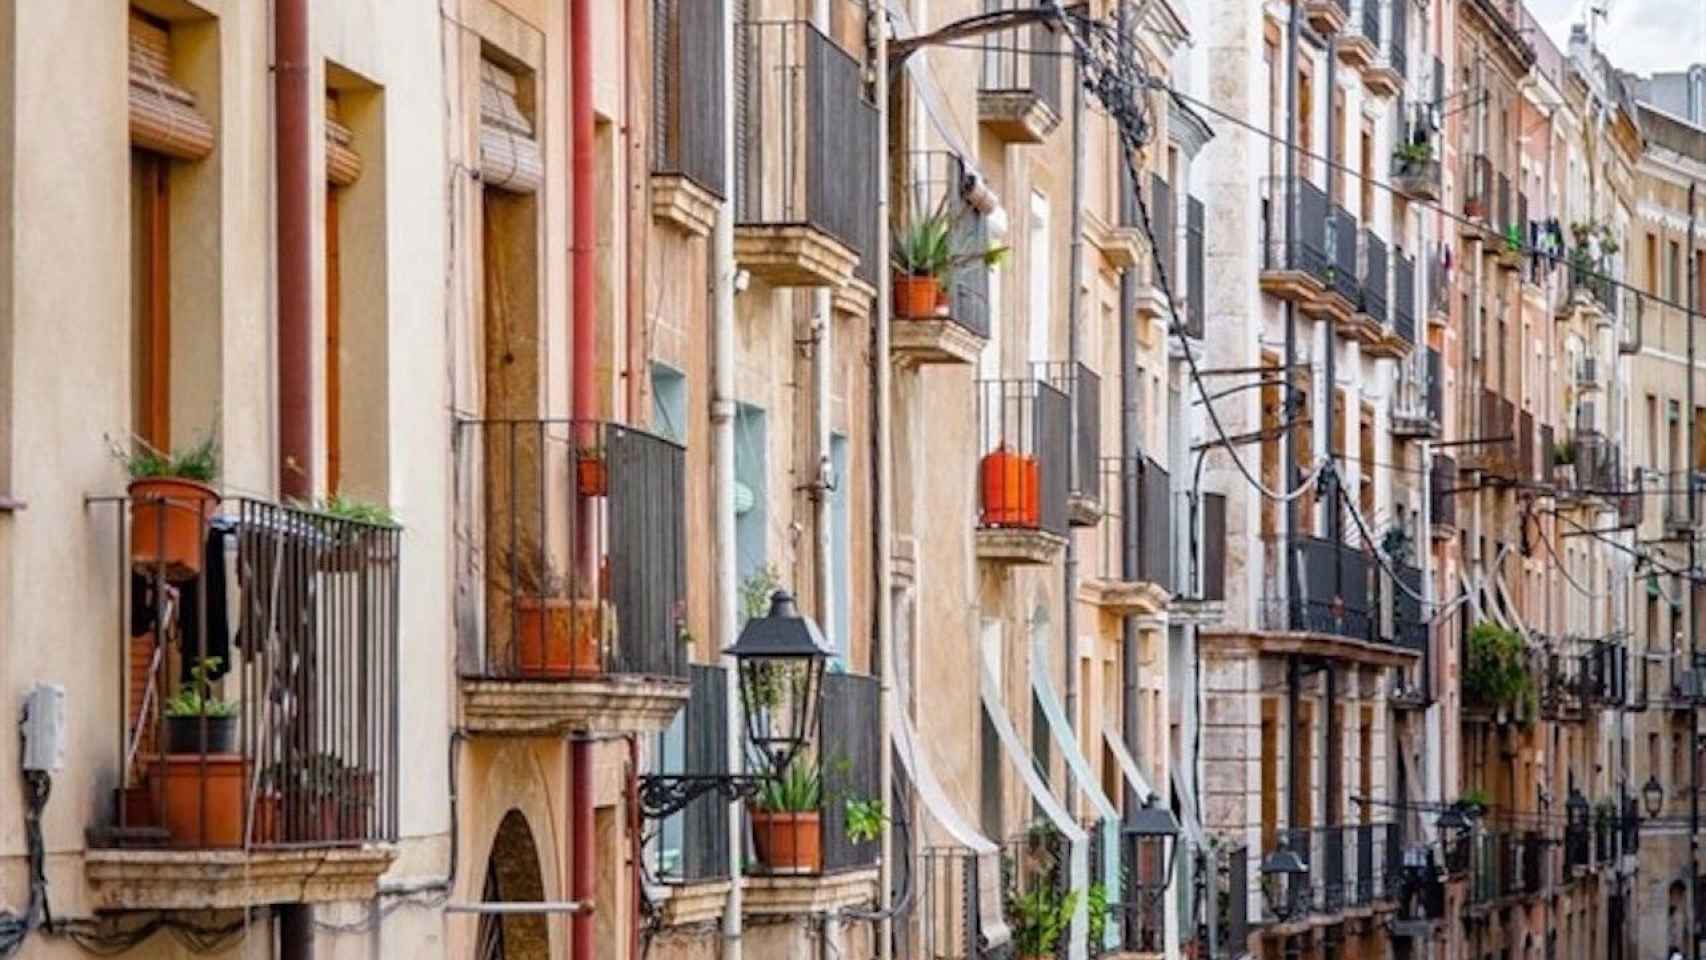 Bloques de pisos en Barcelona